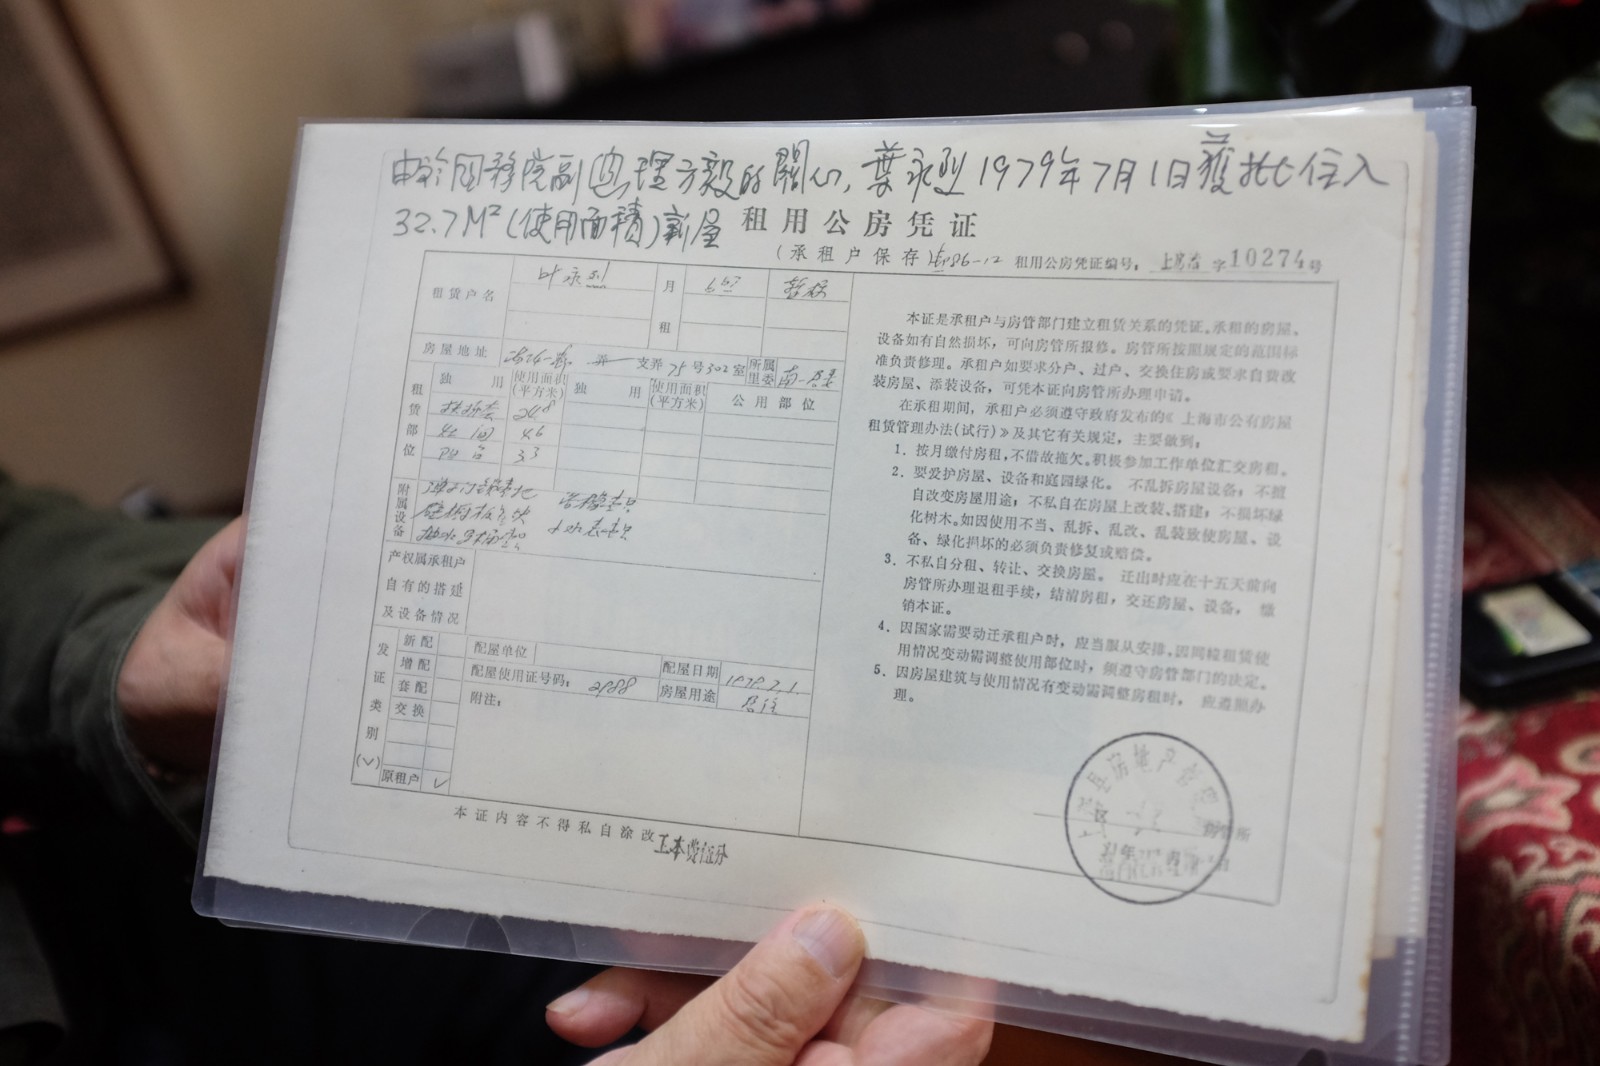 叶永烈于1979年7月1日获批入住的32.7平方米新屋的《租用公房凭证》。.JPG